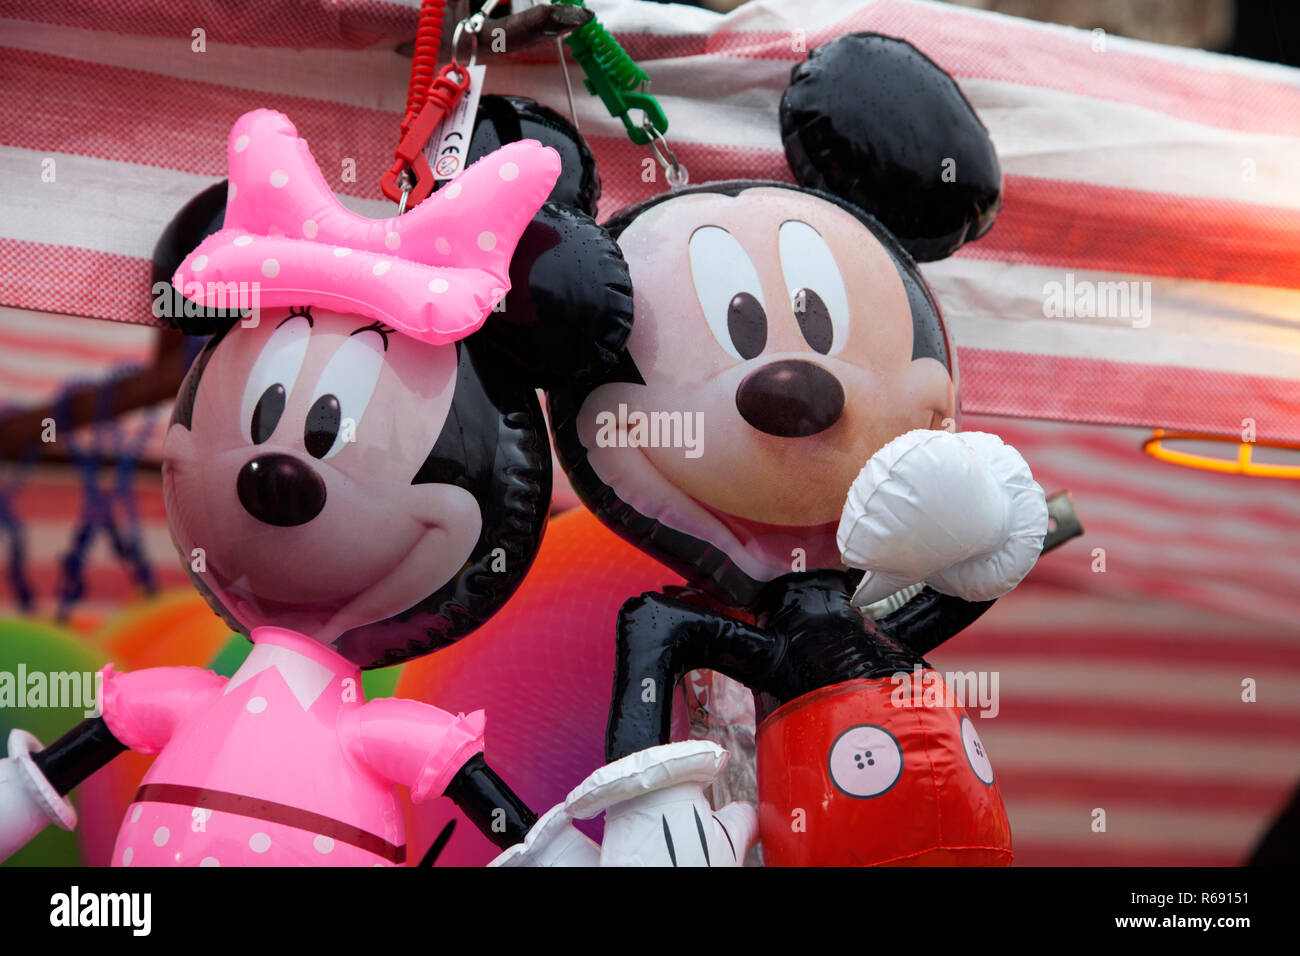 Minnie Mouse, Mickey Mouse (Disney) ein Geschenk anzubieten style  Weihnachtsschmuck mit einem schneereichen Winter Hintergrund  Stockfotografie - Alamy